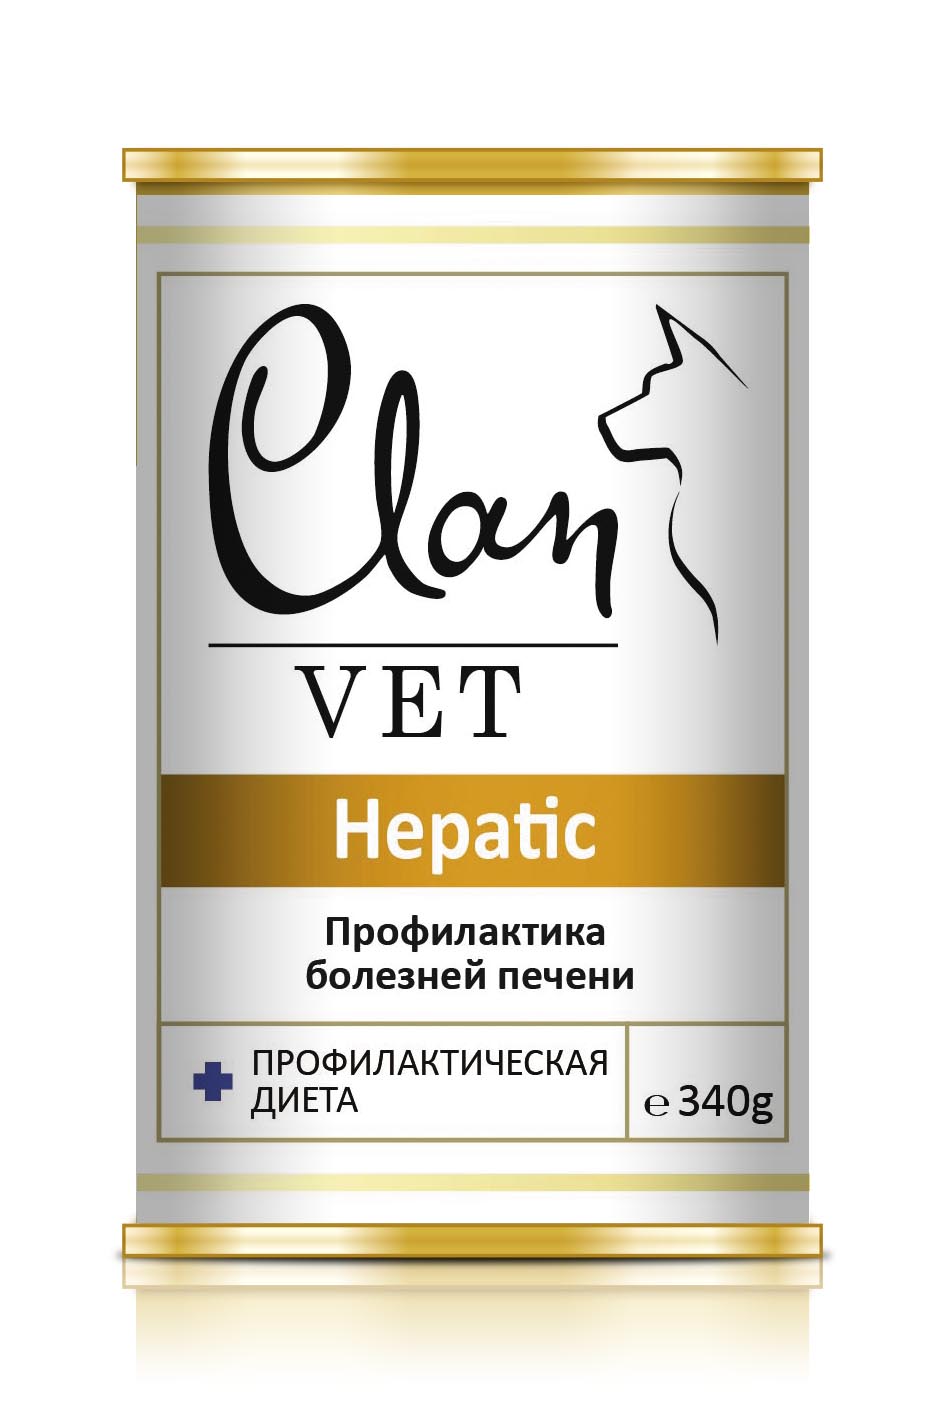 Корм для собак Clan vet hepatic профилактика болезней печени 340 г бан.